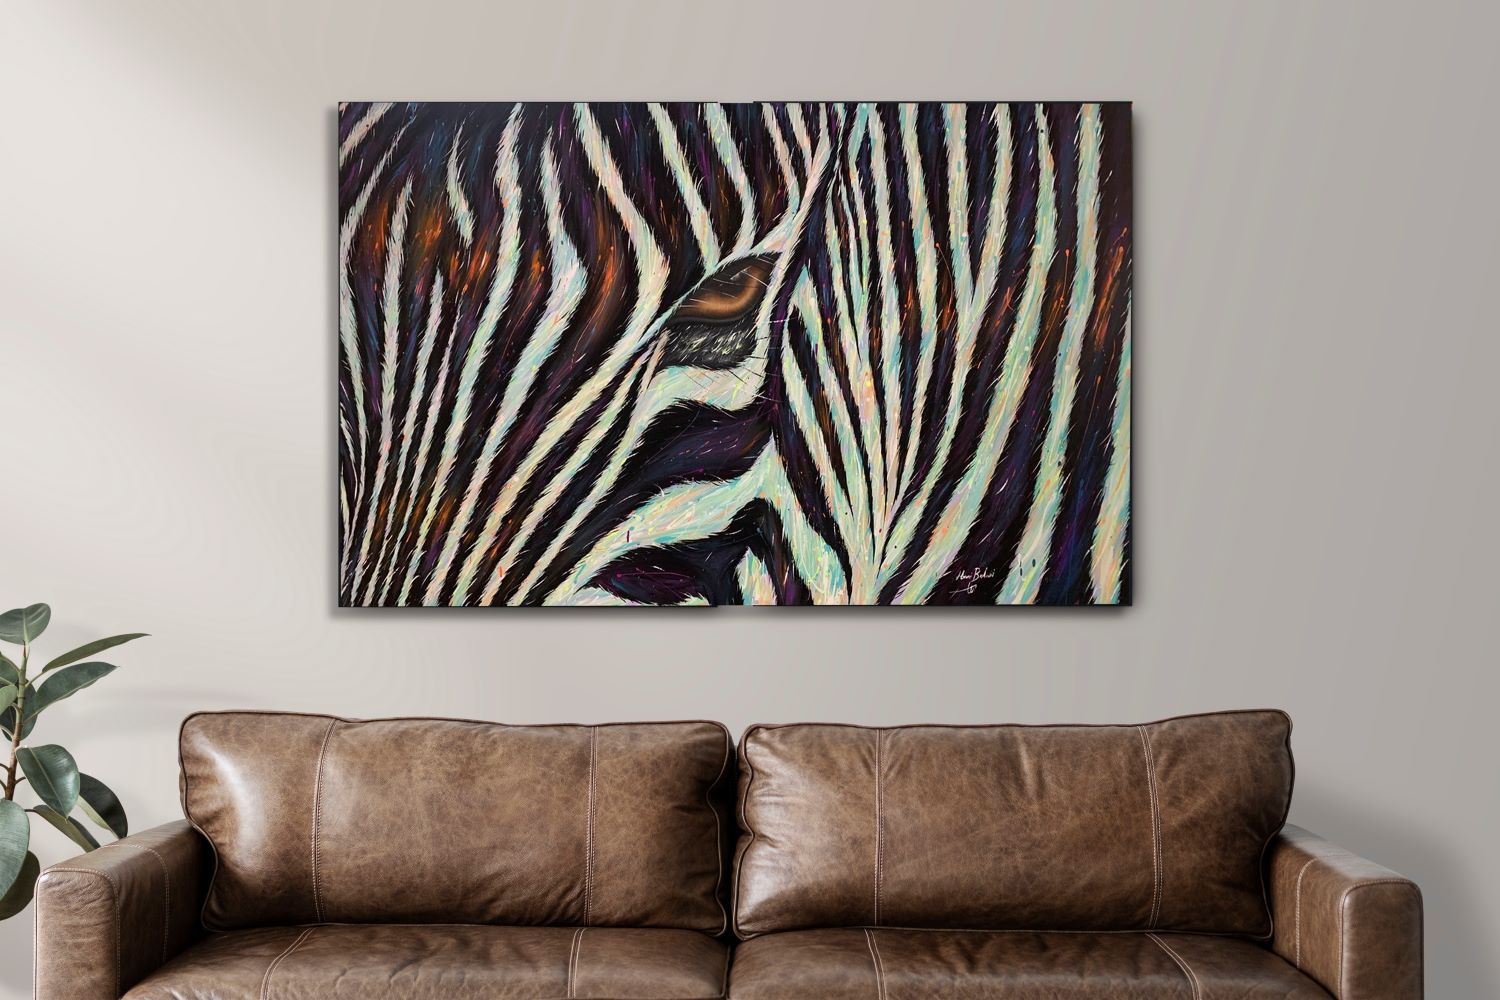 The deep gaze of the zebra